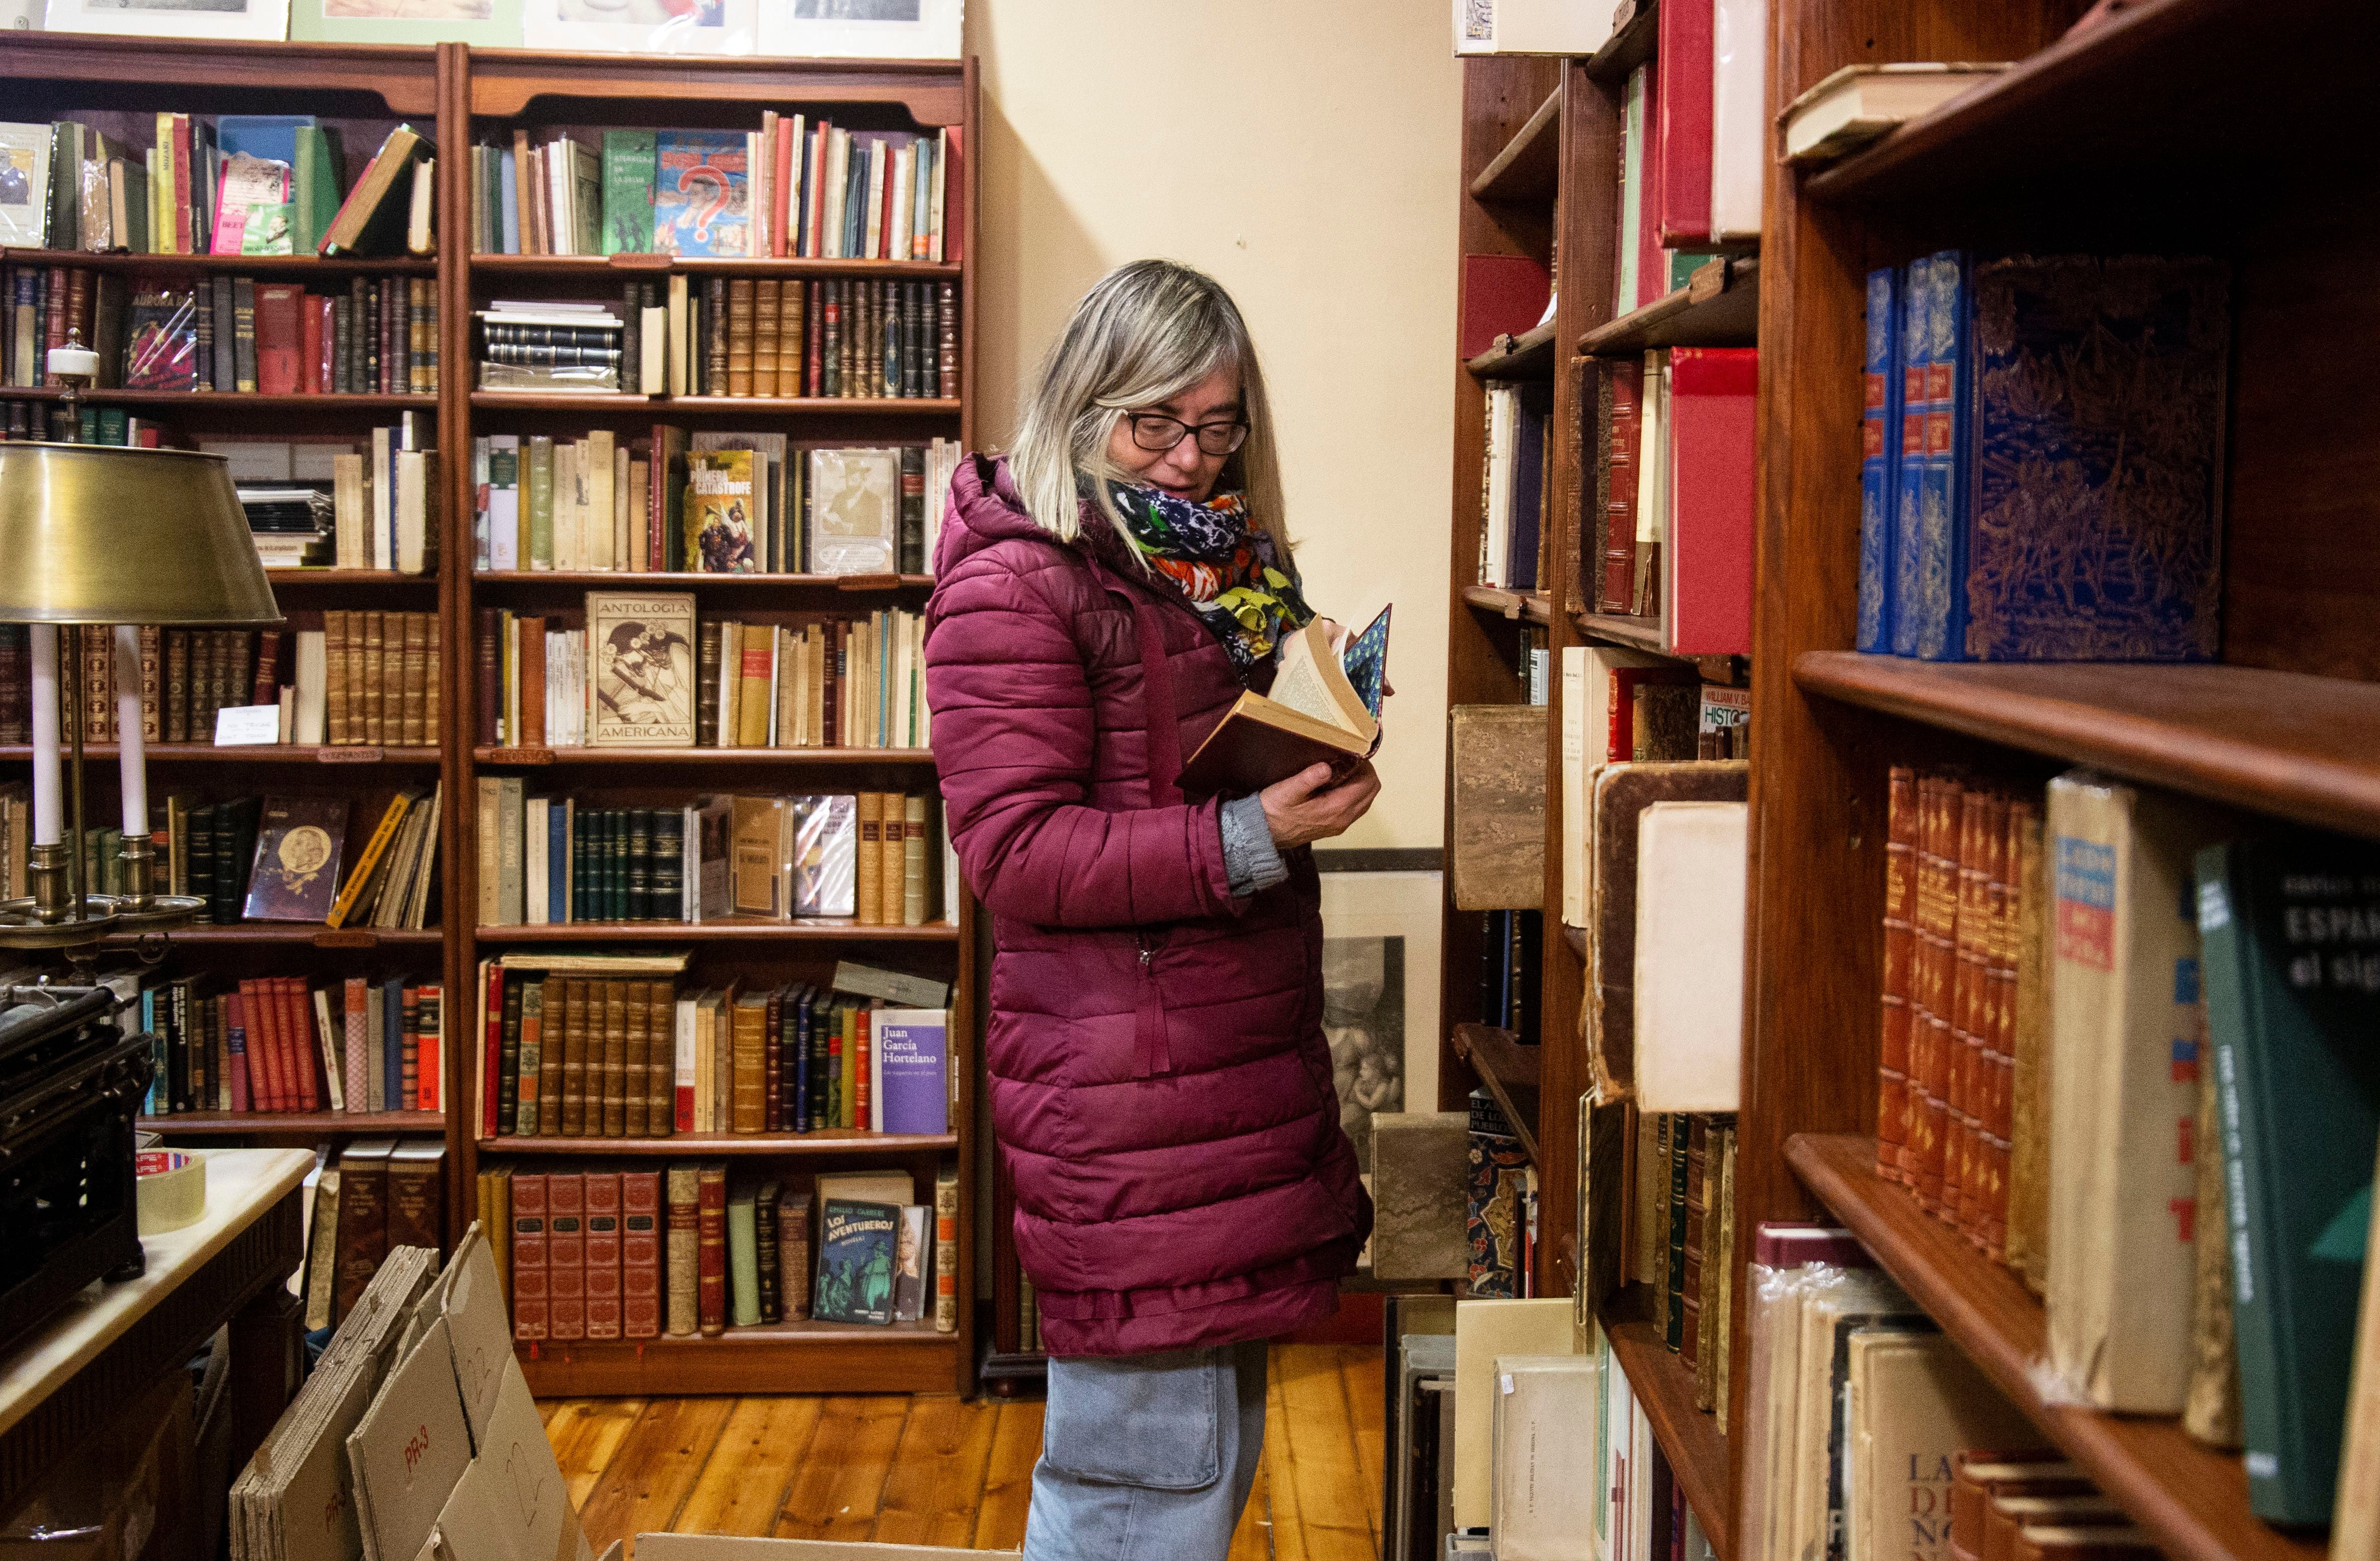 Una emblemática librería de viejo de Salamanca cierra porque su edificio se vende para viviendas turísticas